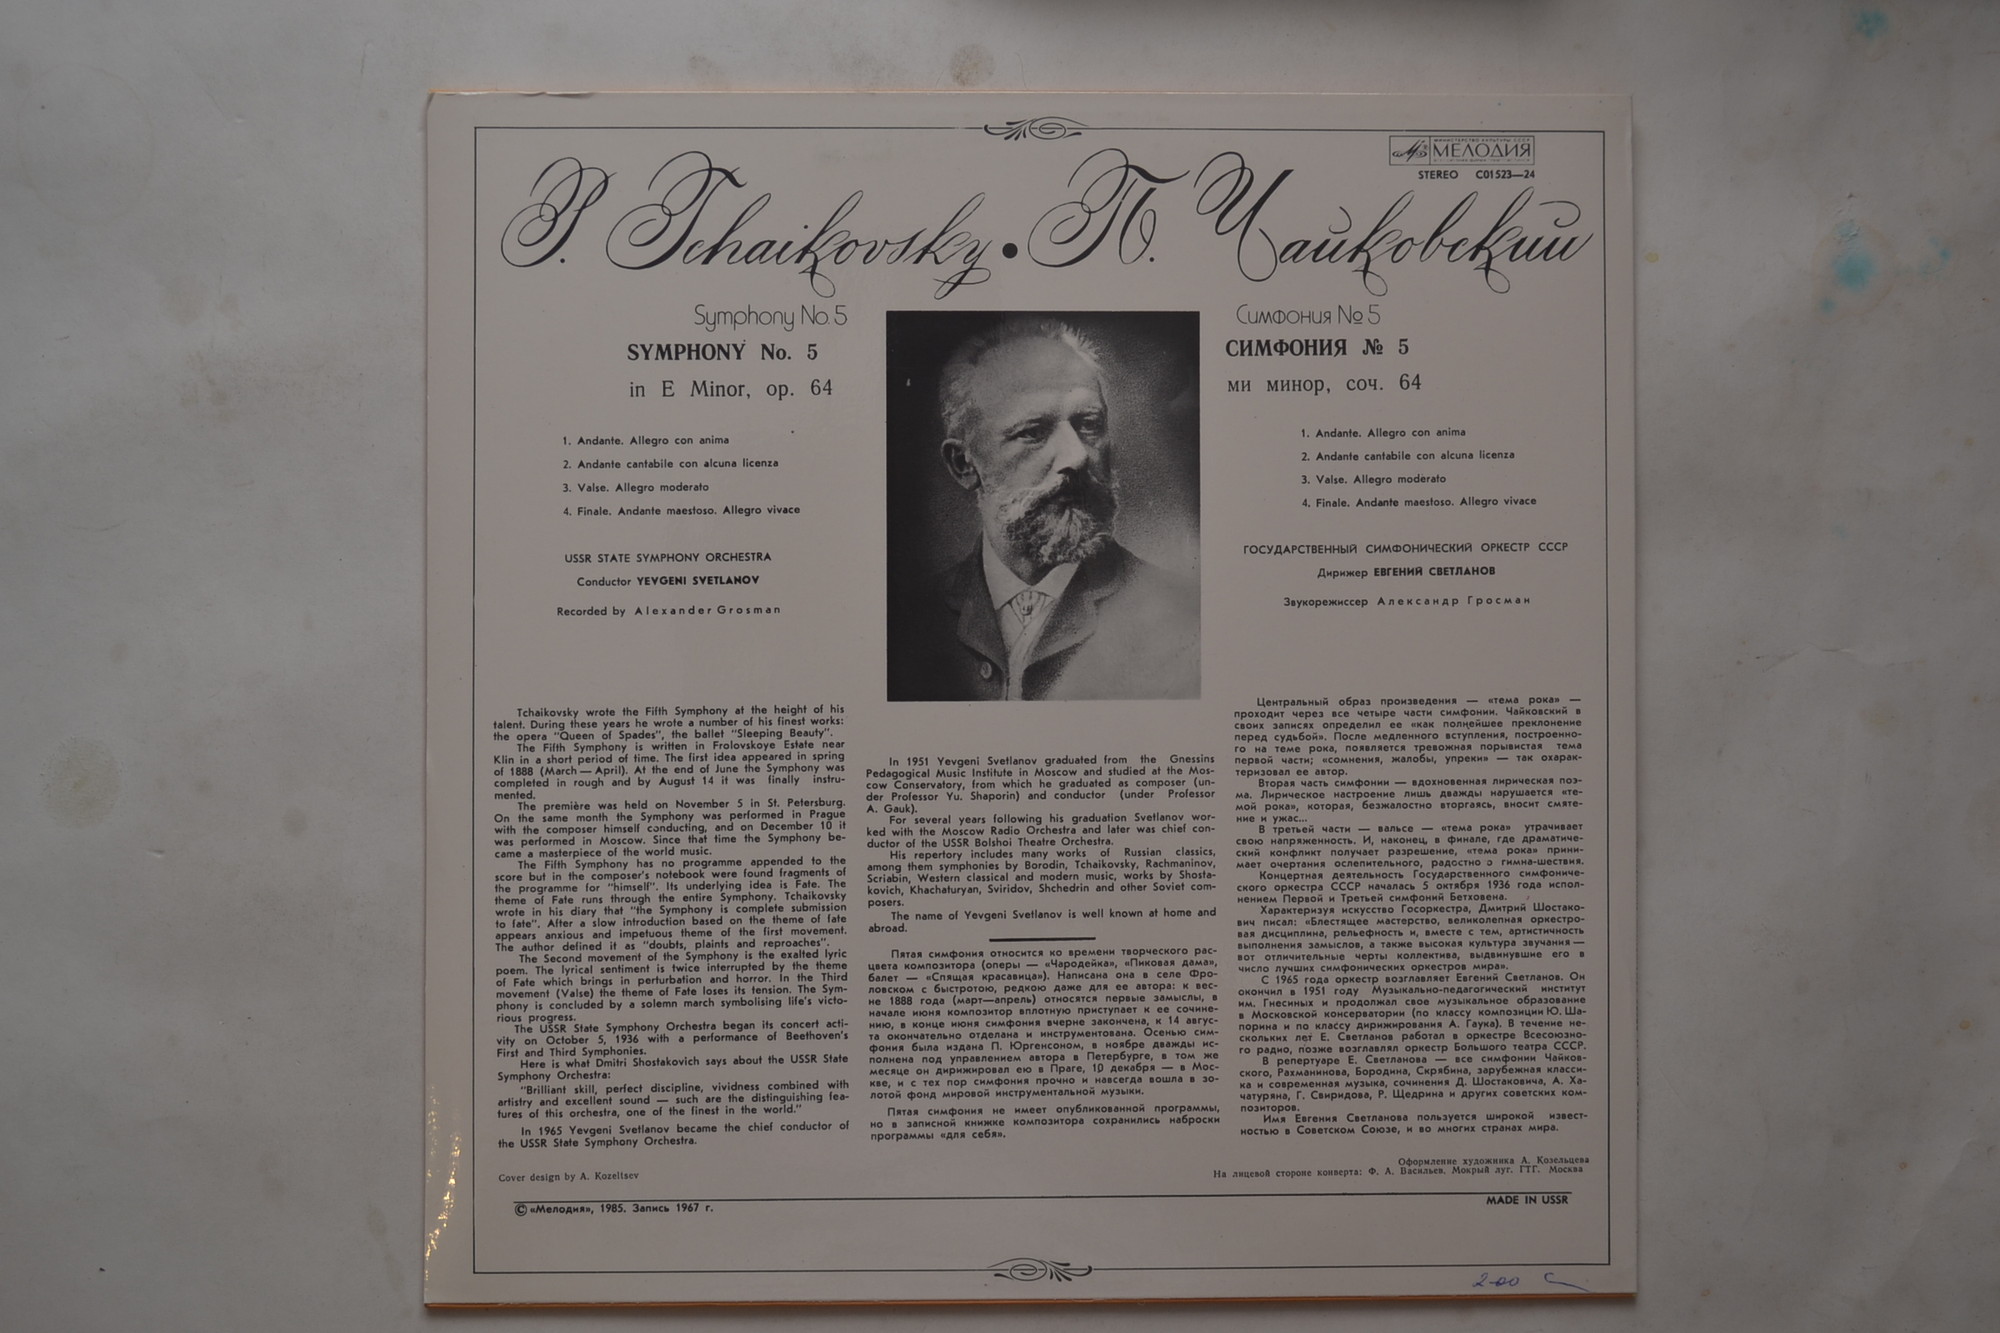 П. ЧАЙКОВСКИЙ (1840–1893): Симфония № 5 ми минор, соч. 64 (Е. Светланов)